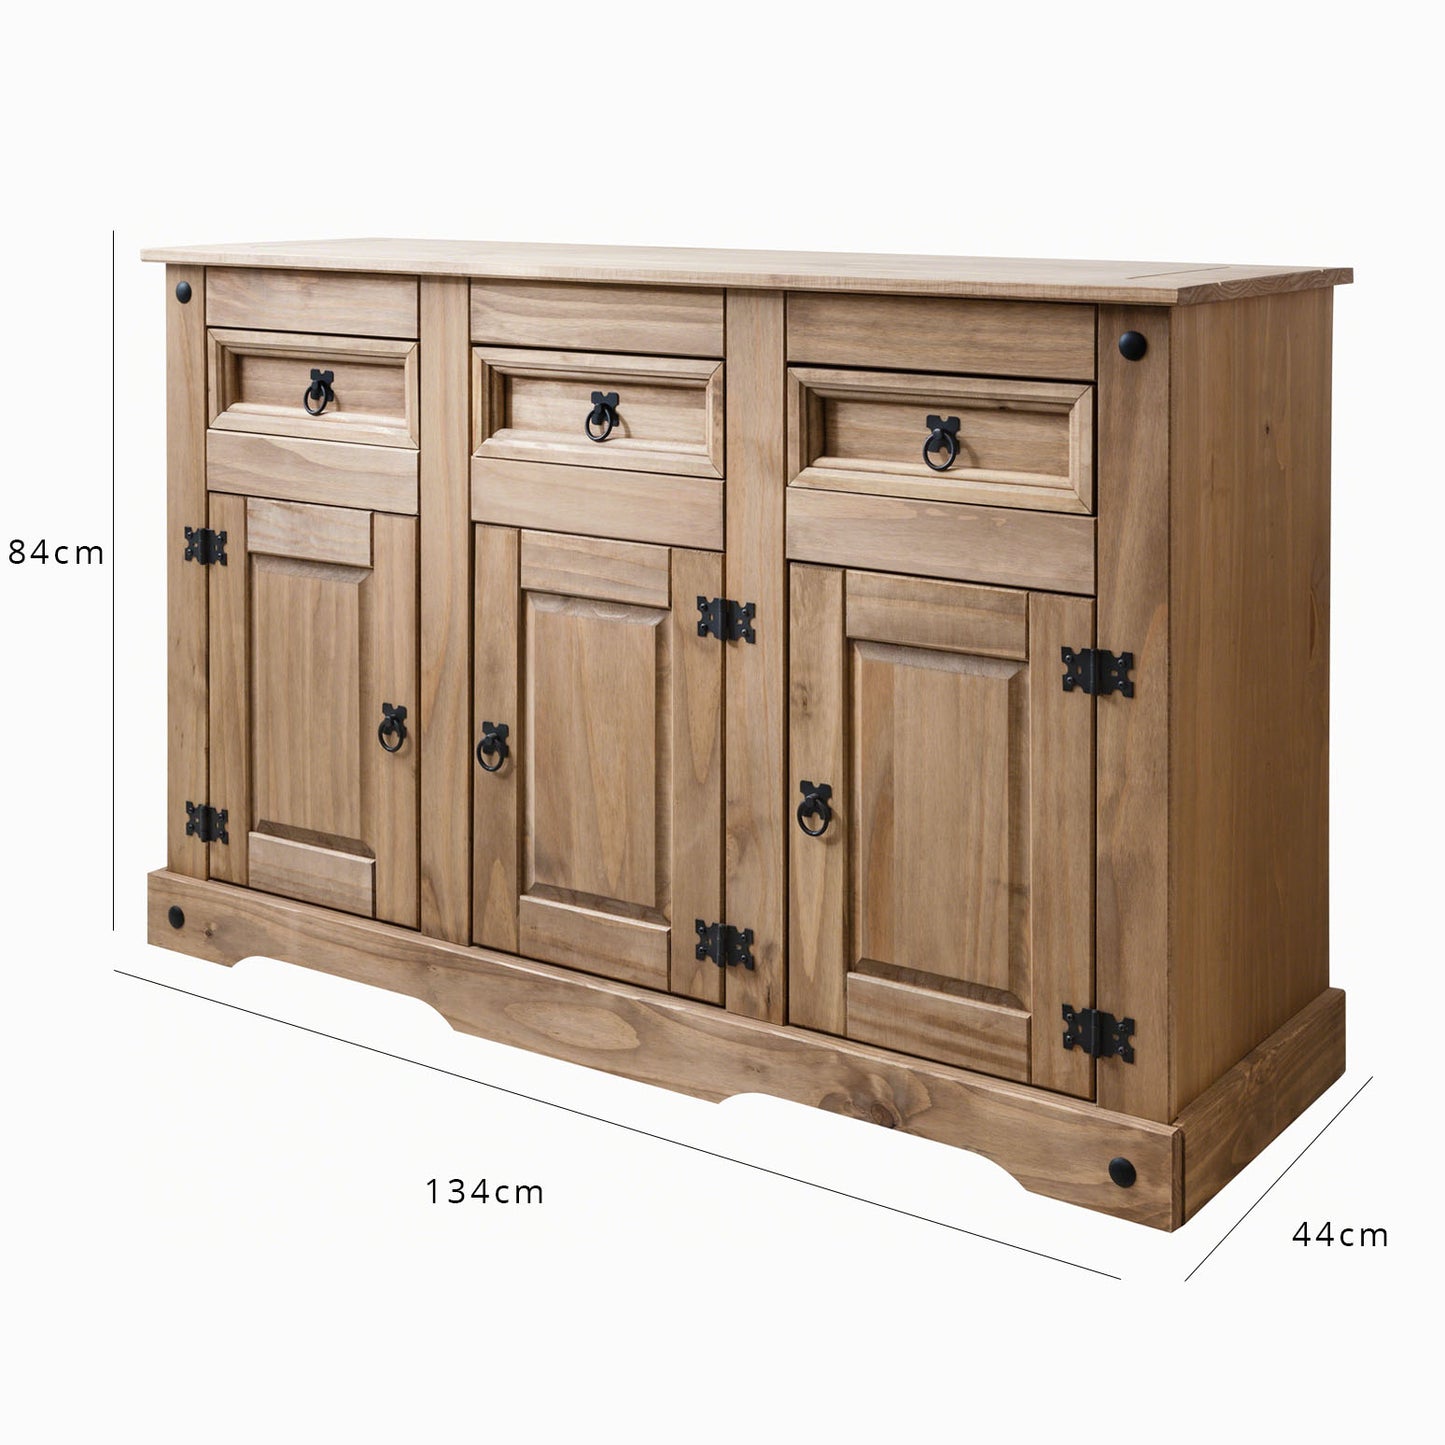 Sideboard - 3 Drawers 3 Doors - Solid Wood